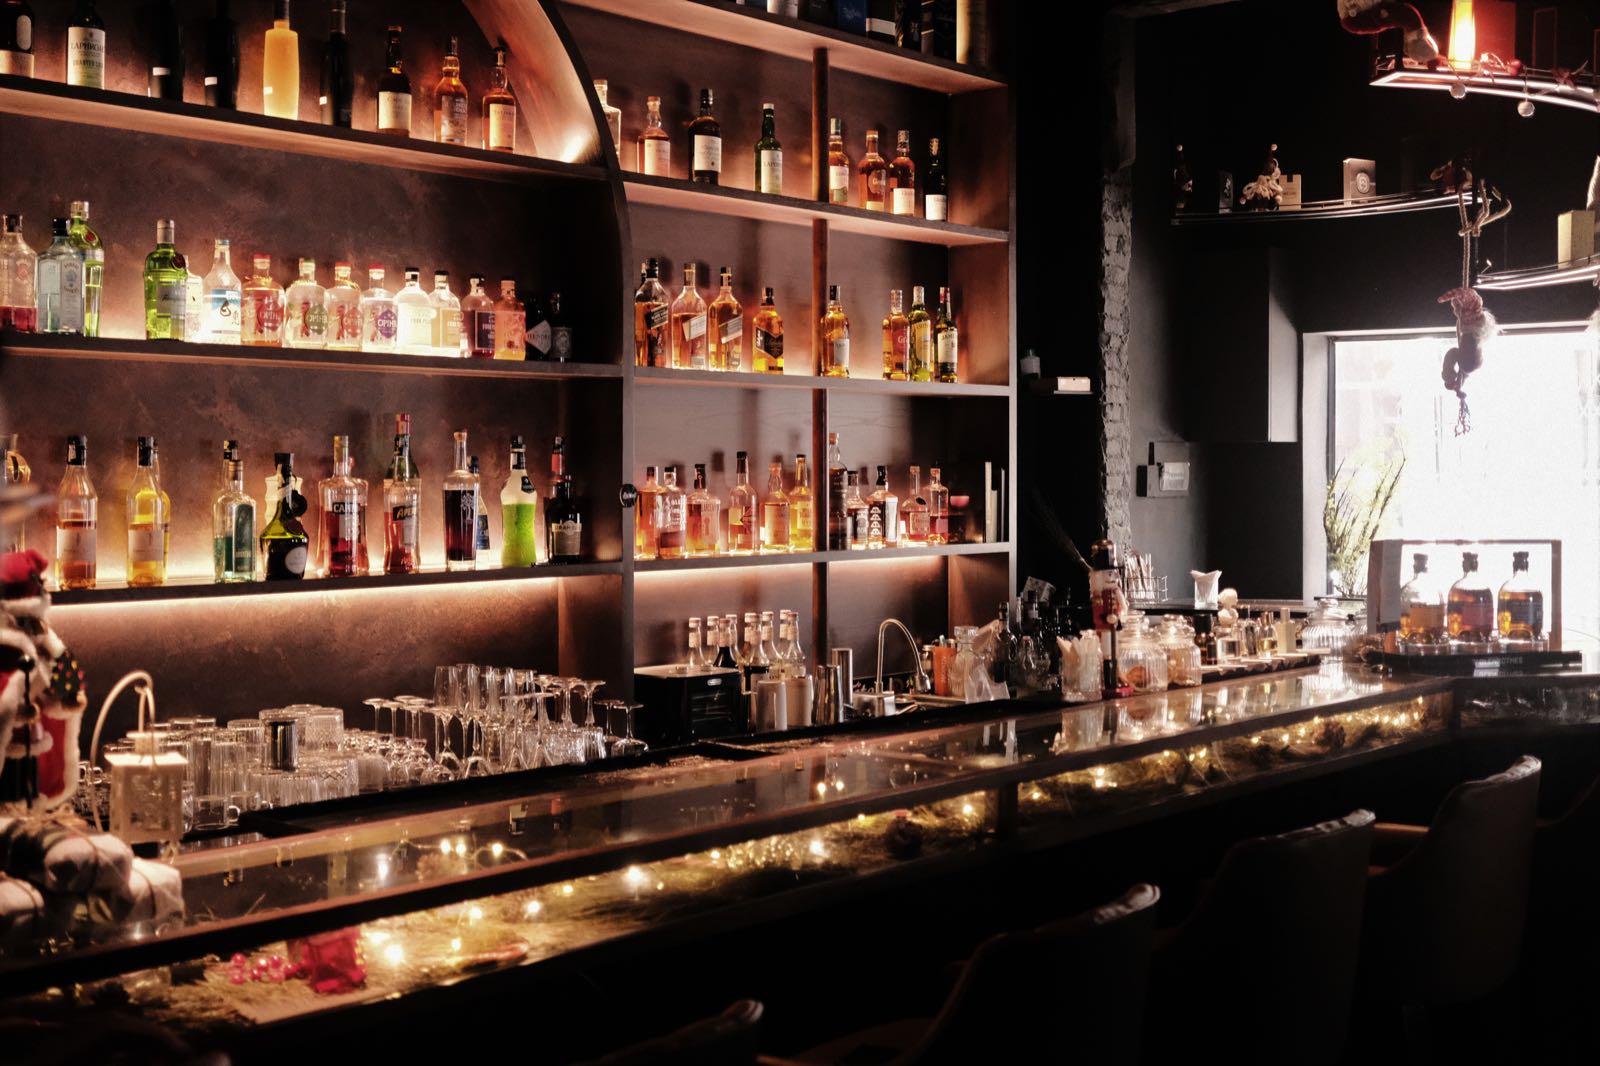 du bar, concept bar, nước hoa niche, cocktail